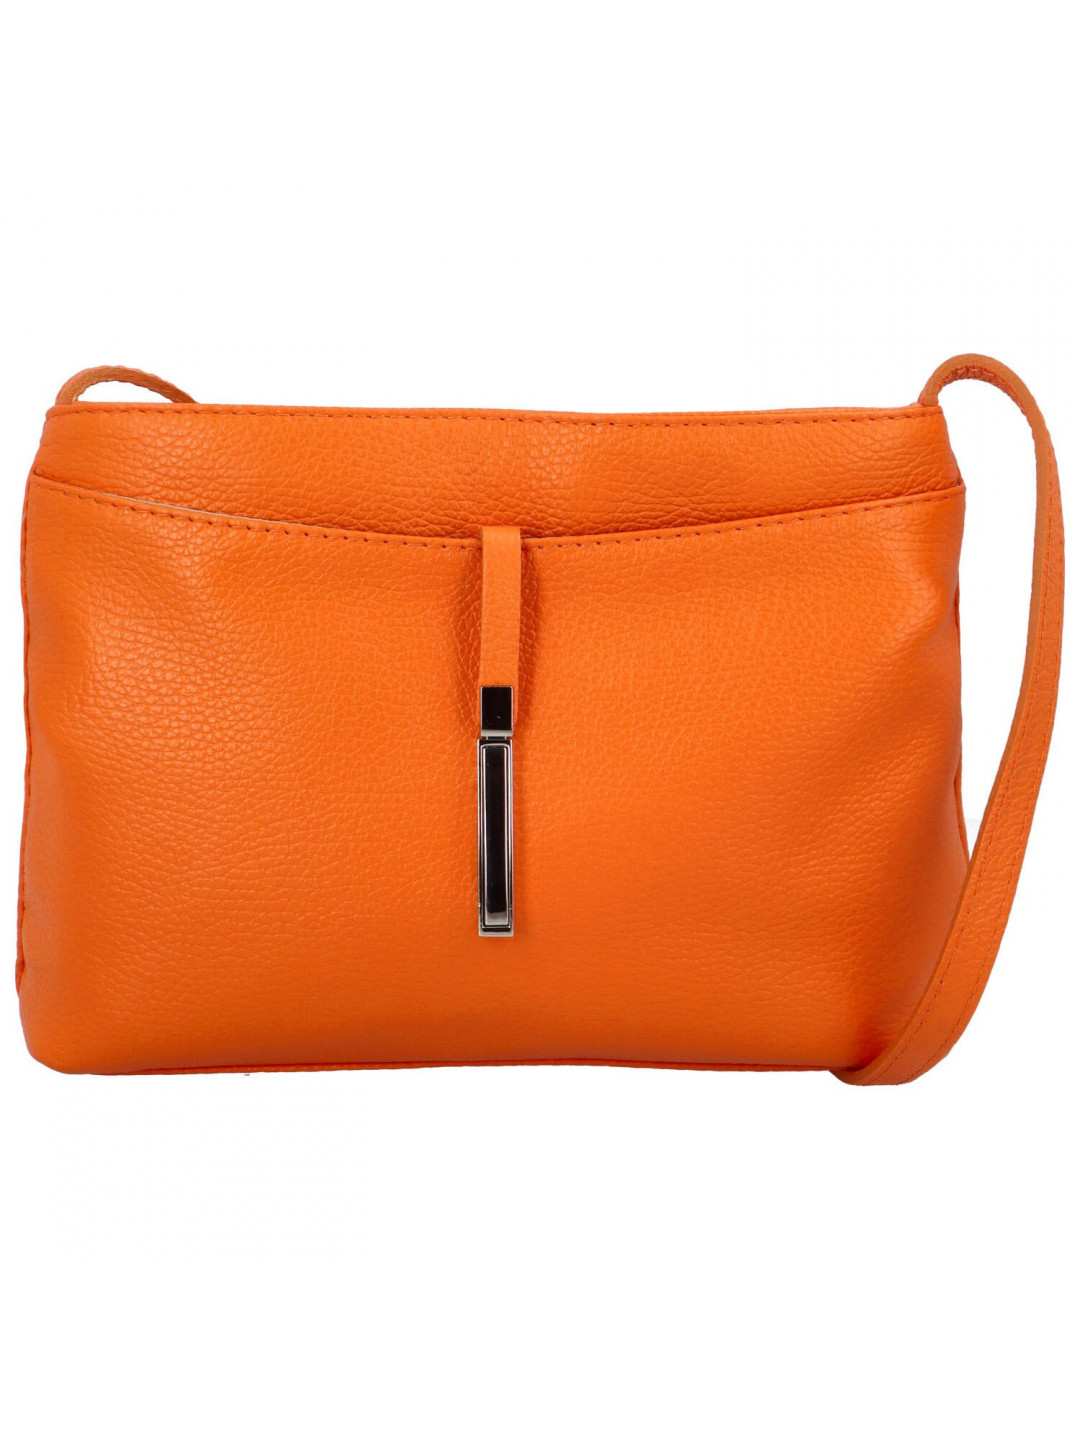 Dámská kožená kabelka Mirna oranžová